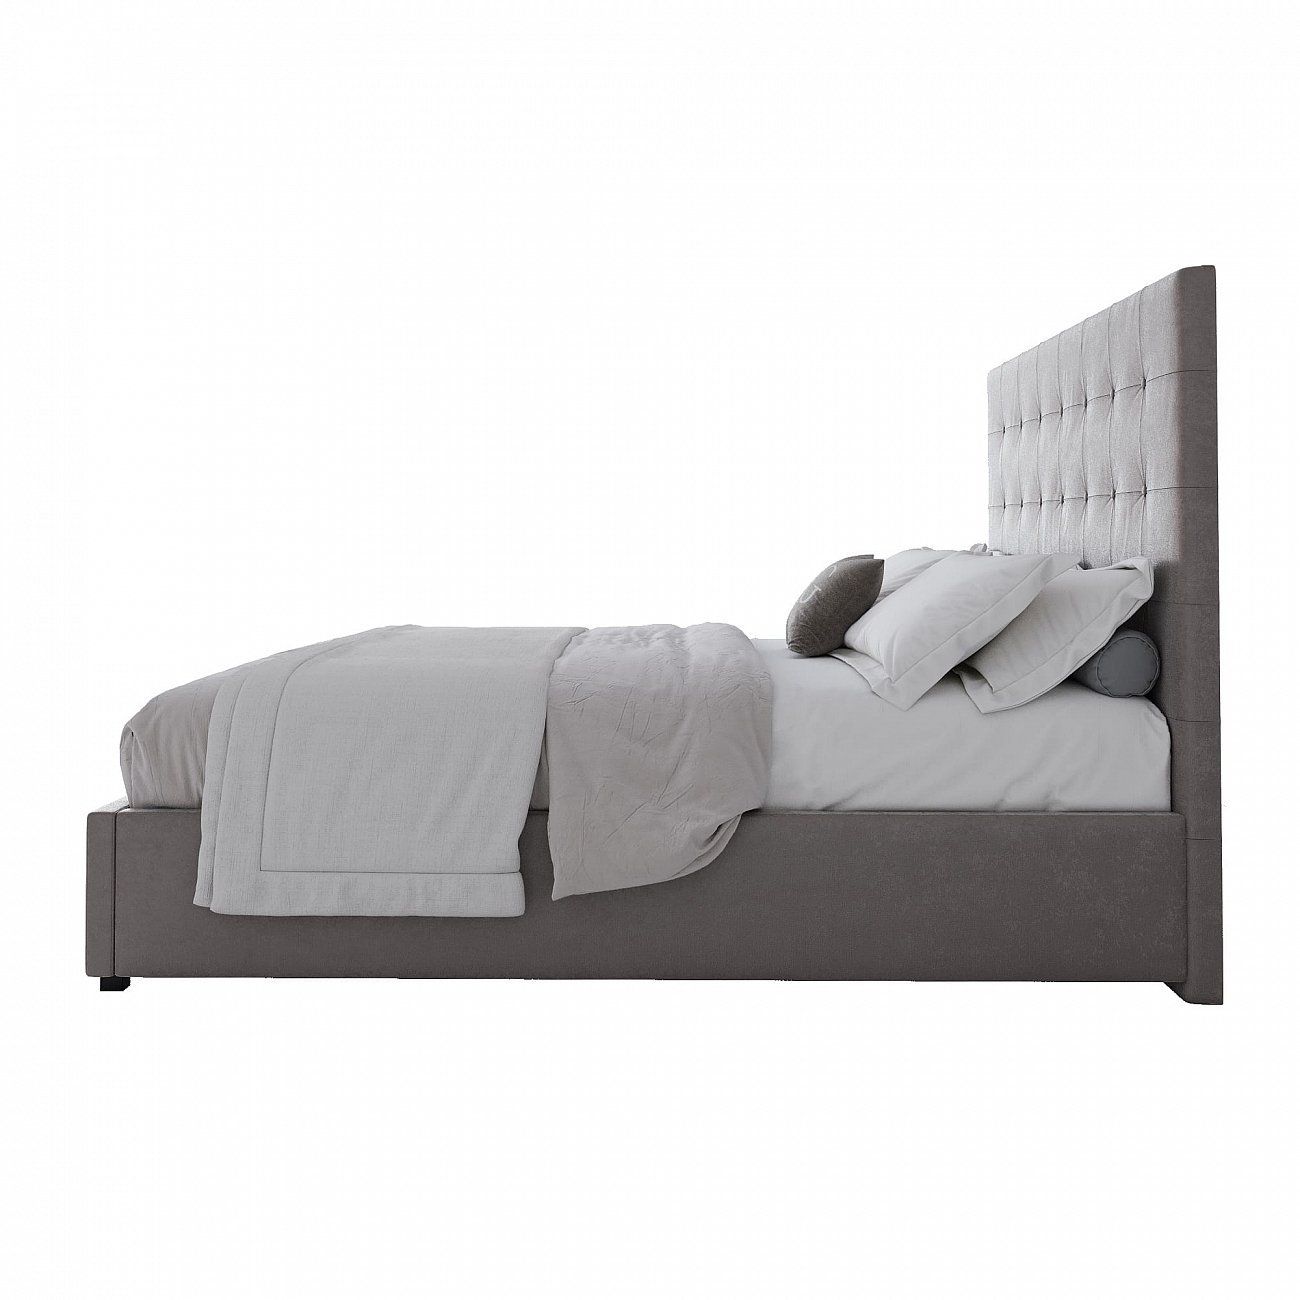 Кровать двуспальная с мягким изголовьем 160х200 см светло-коричневая Royal Black